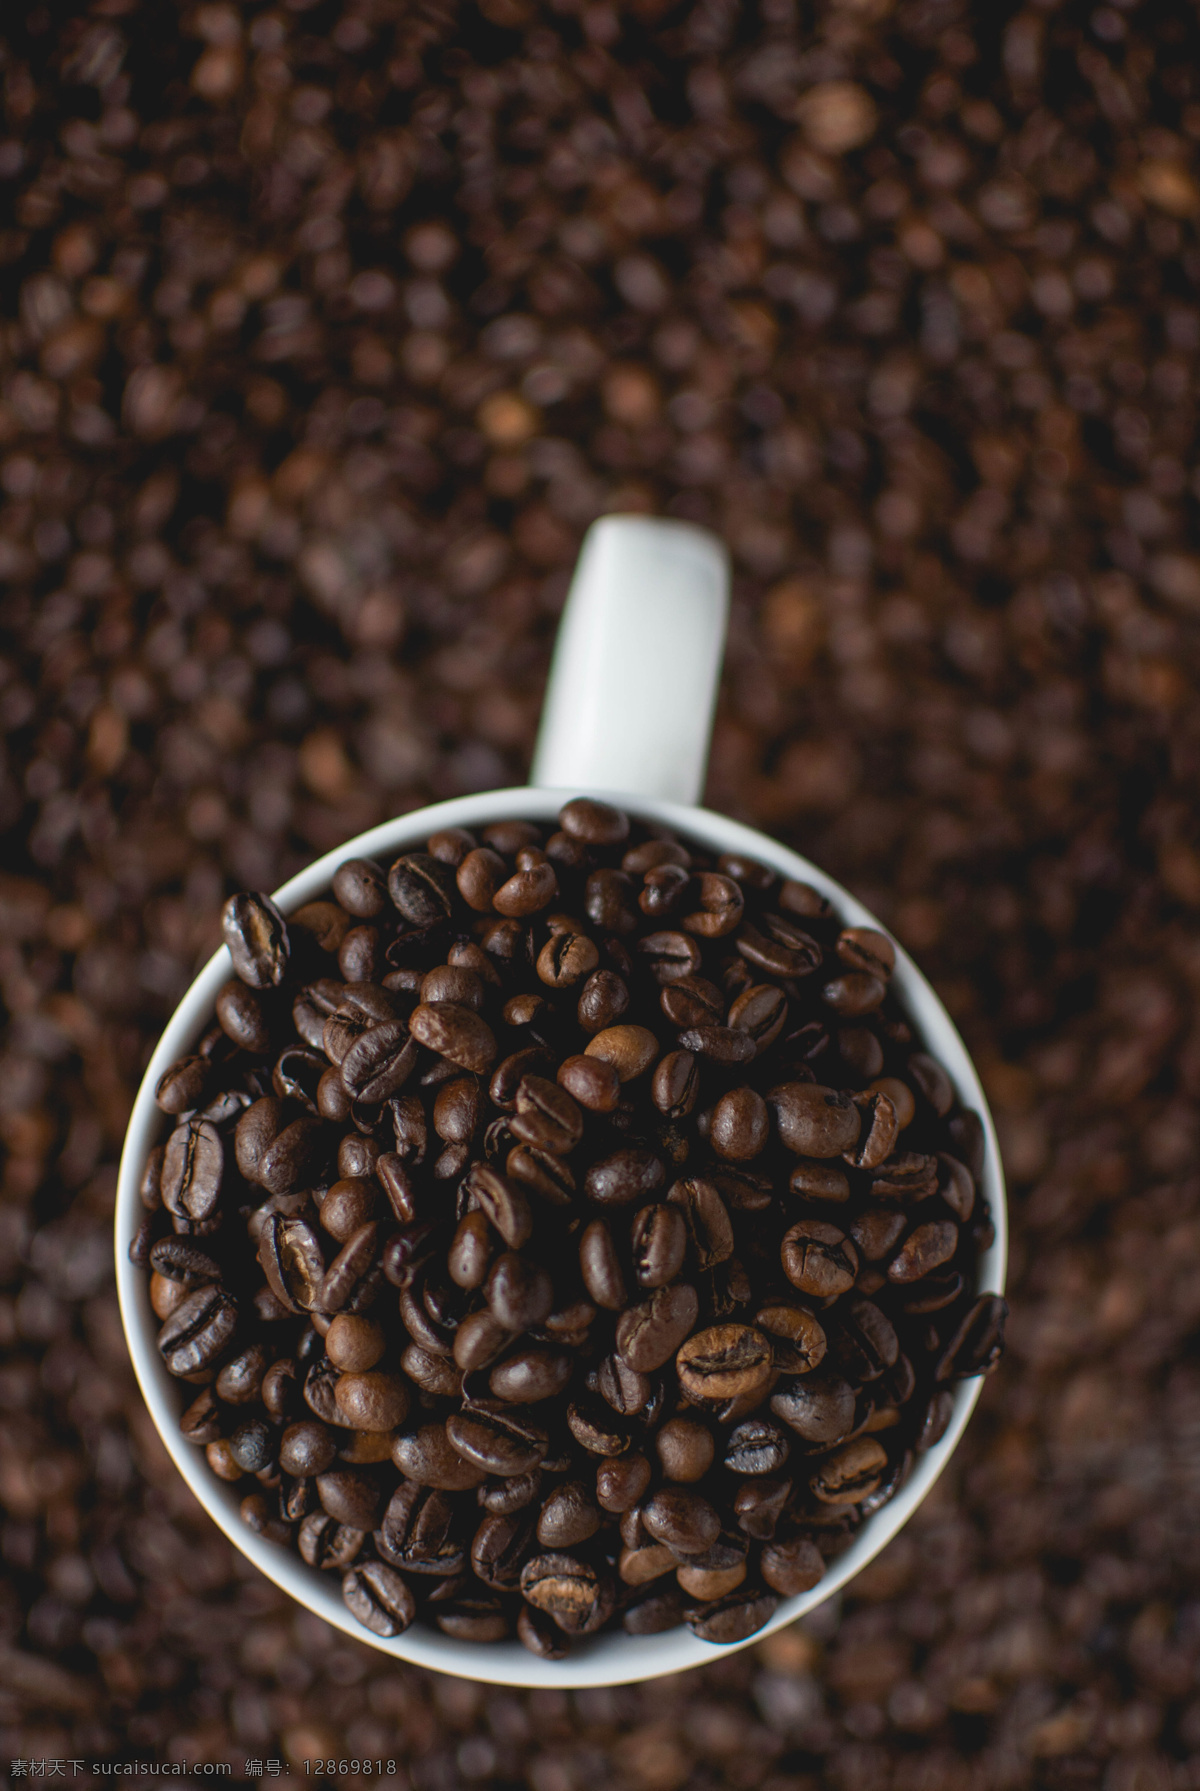 咖啡 咖啡馆 烤 豆类 咖啡烘焙 咖啡因 可可 可可豆 咖啡杯 咖啡厅 咖啡摄影 咖啡豆摄影 咖啡原材料 咖啡豆特写 可可豆特写 餐饮美食 食物原料